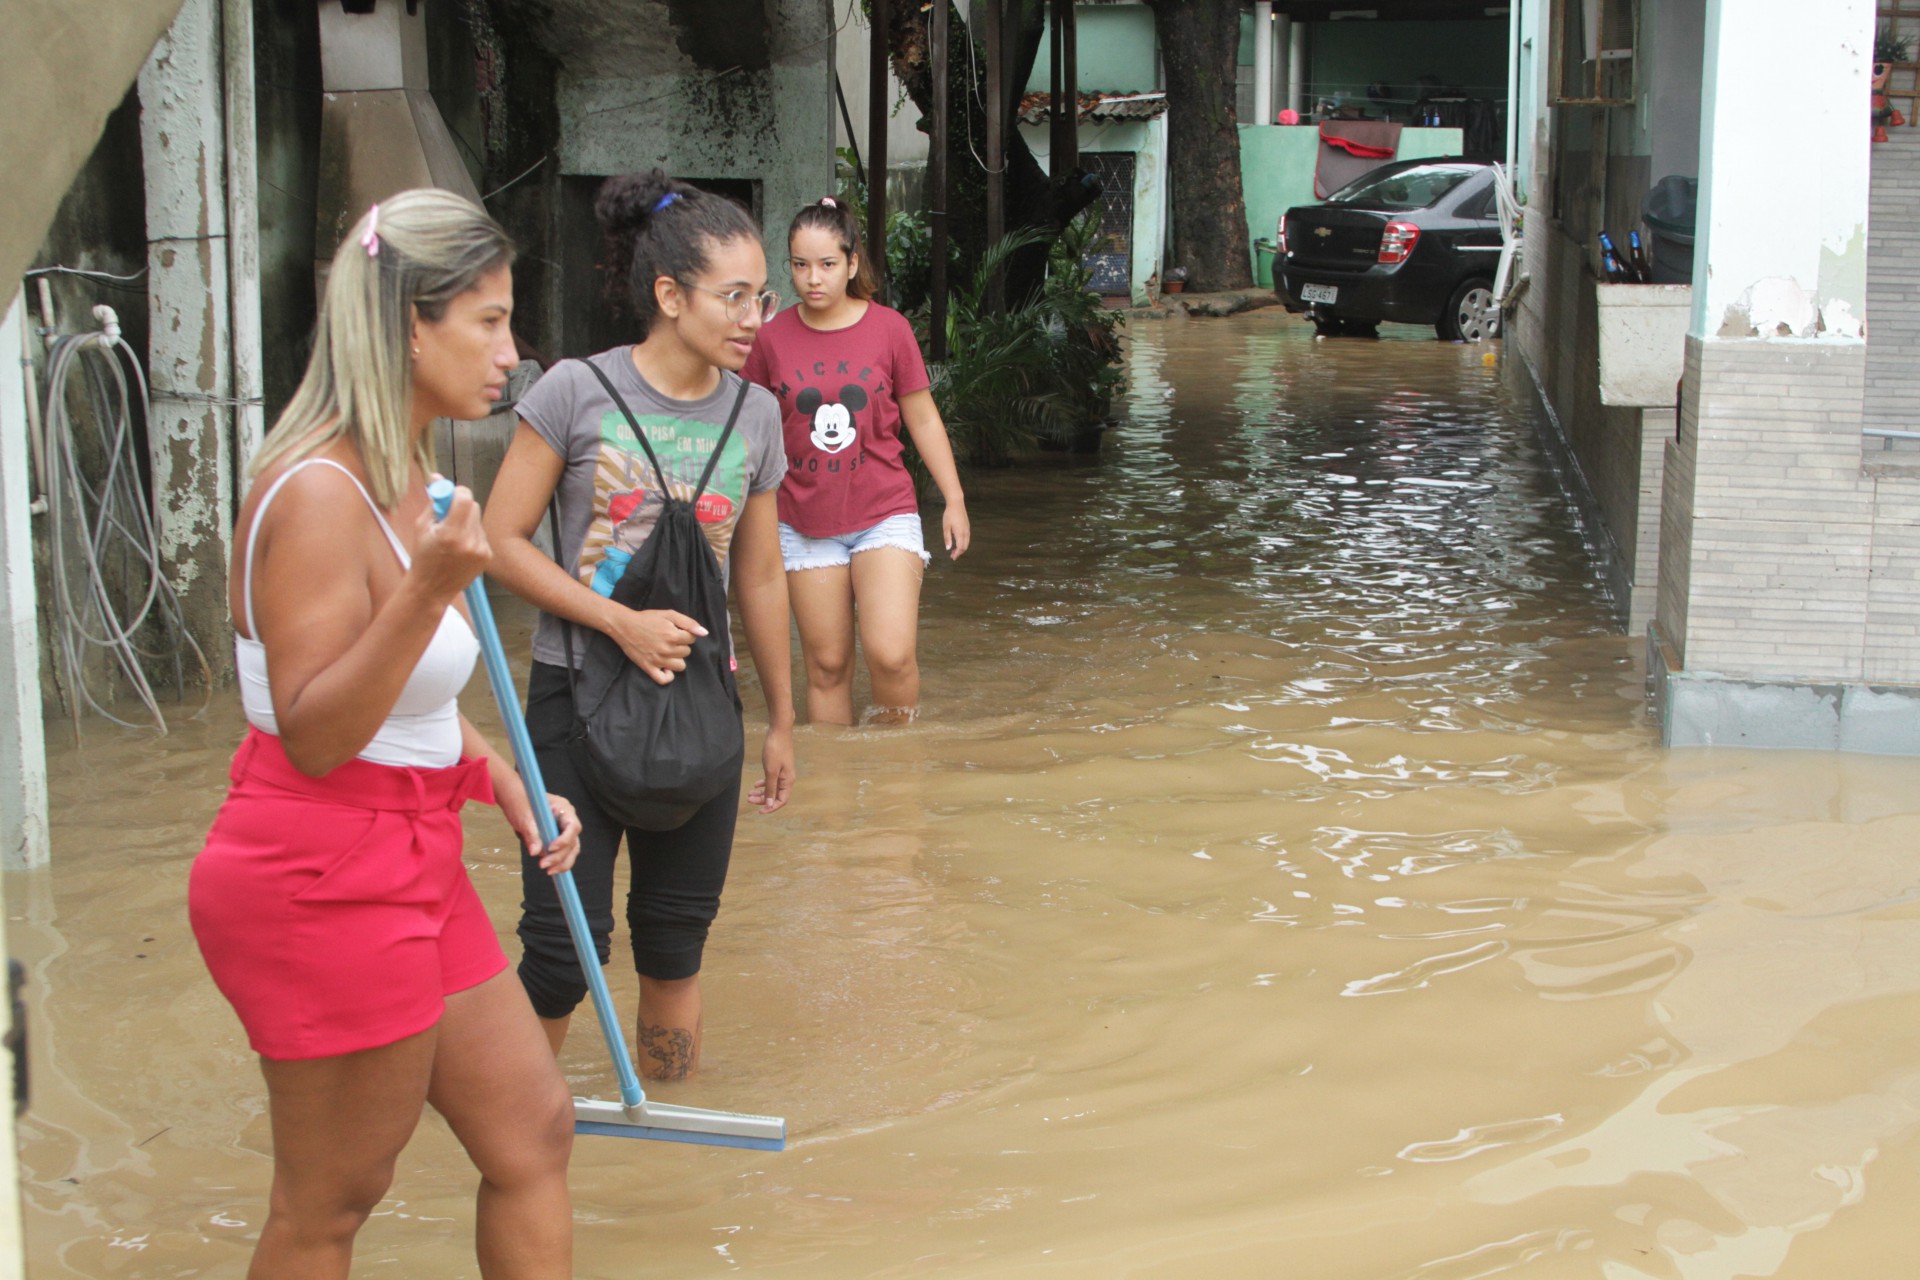 Estragos da chuva na Baixada Fluminense  neste sábado (02) - Jorge Ferreira/Parceiro/Agência O Dia